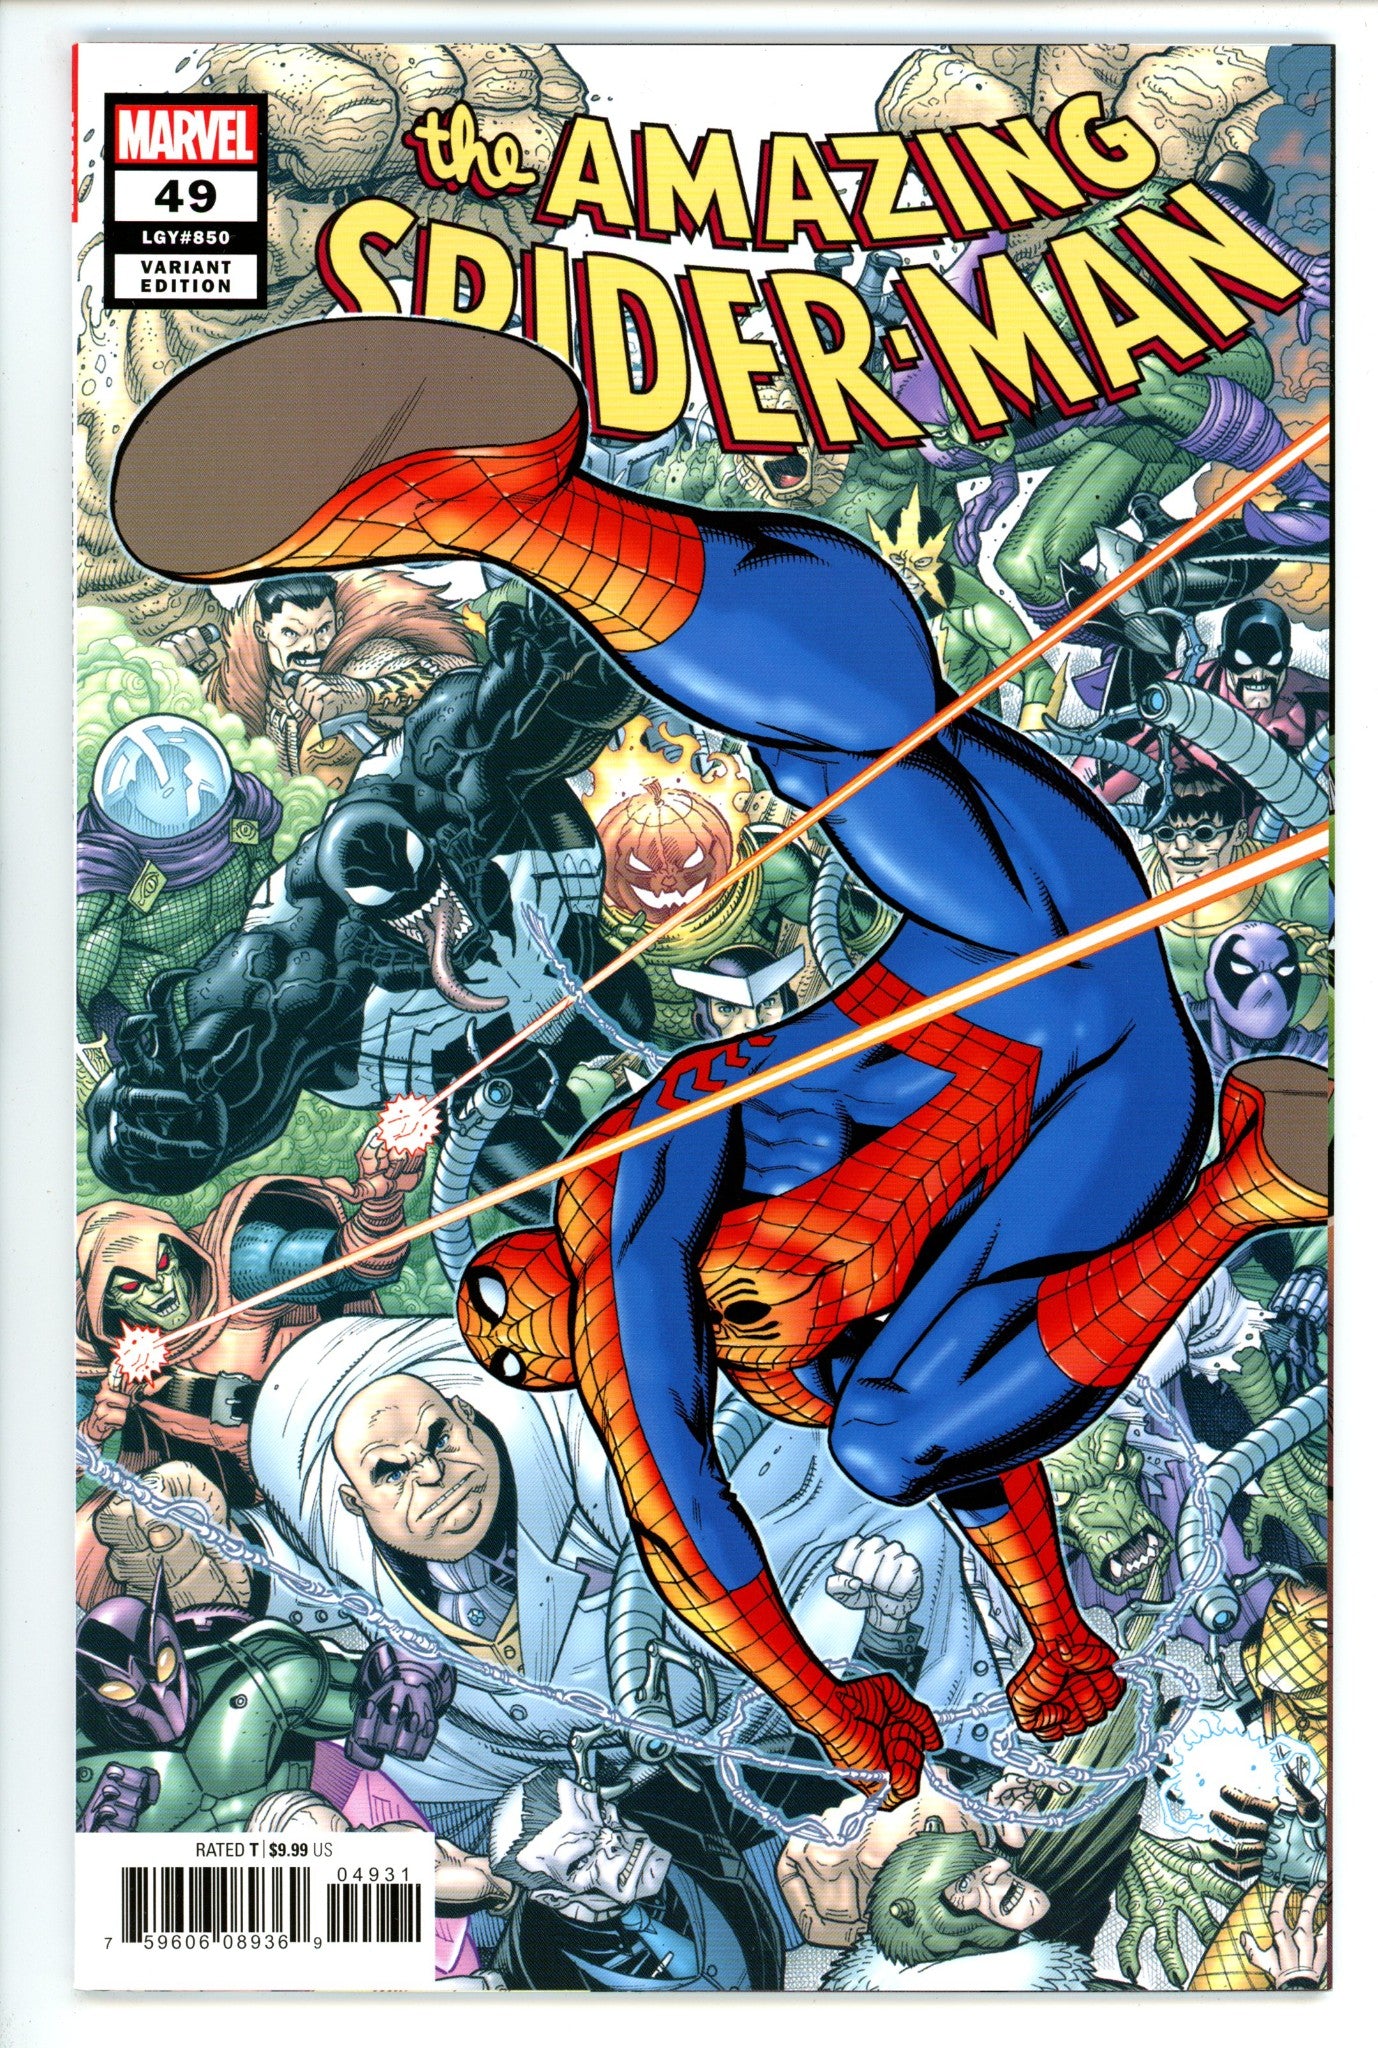 Amazing Spider-Man Vol 5 49 (850)High Grade(2020) AdamsVariant